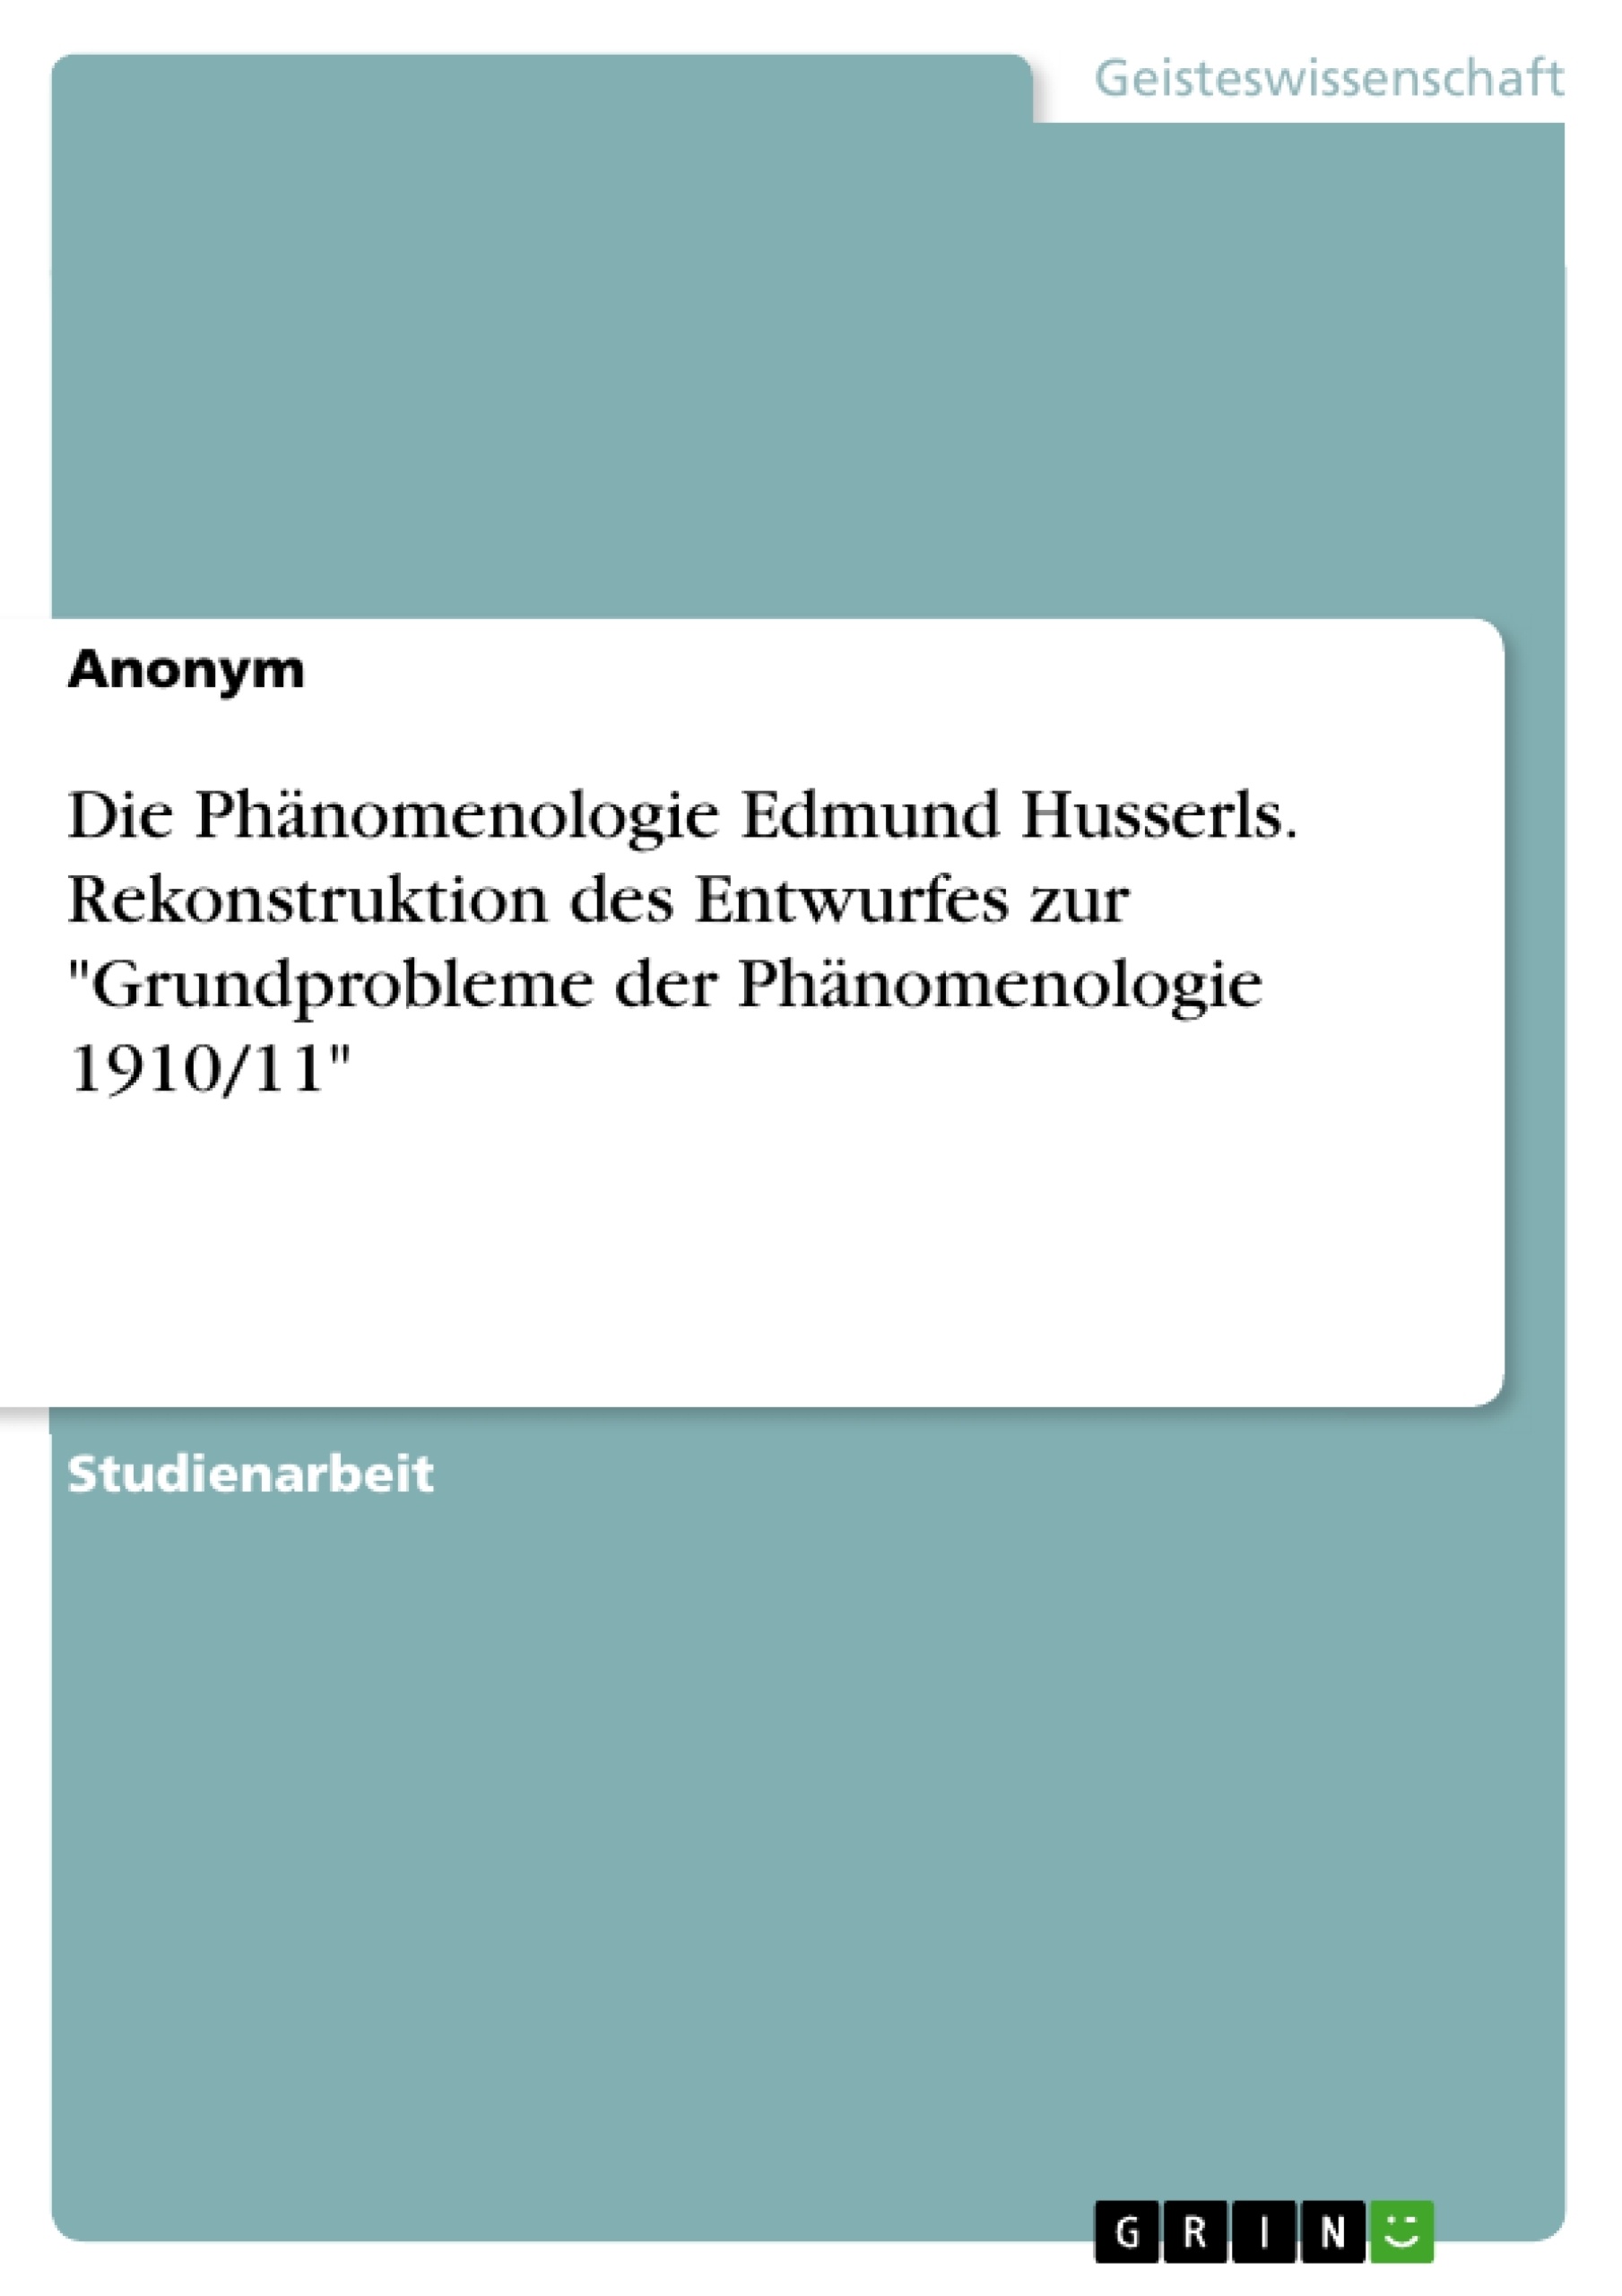 Titel: Die Phänomenologie Edmund Husserls. Rekonstruktion des Entwurfes zur "Grundprobleme der Phänomenologie 1910/11"